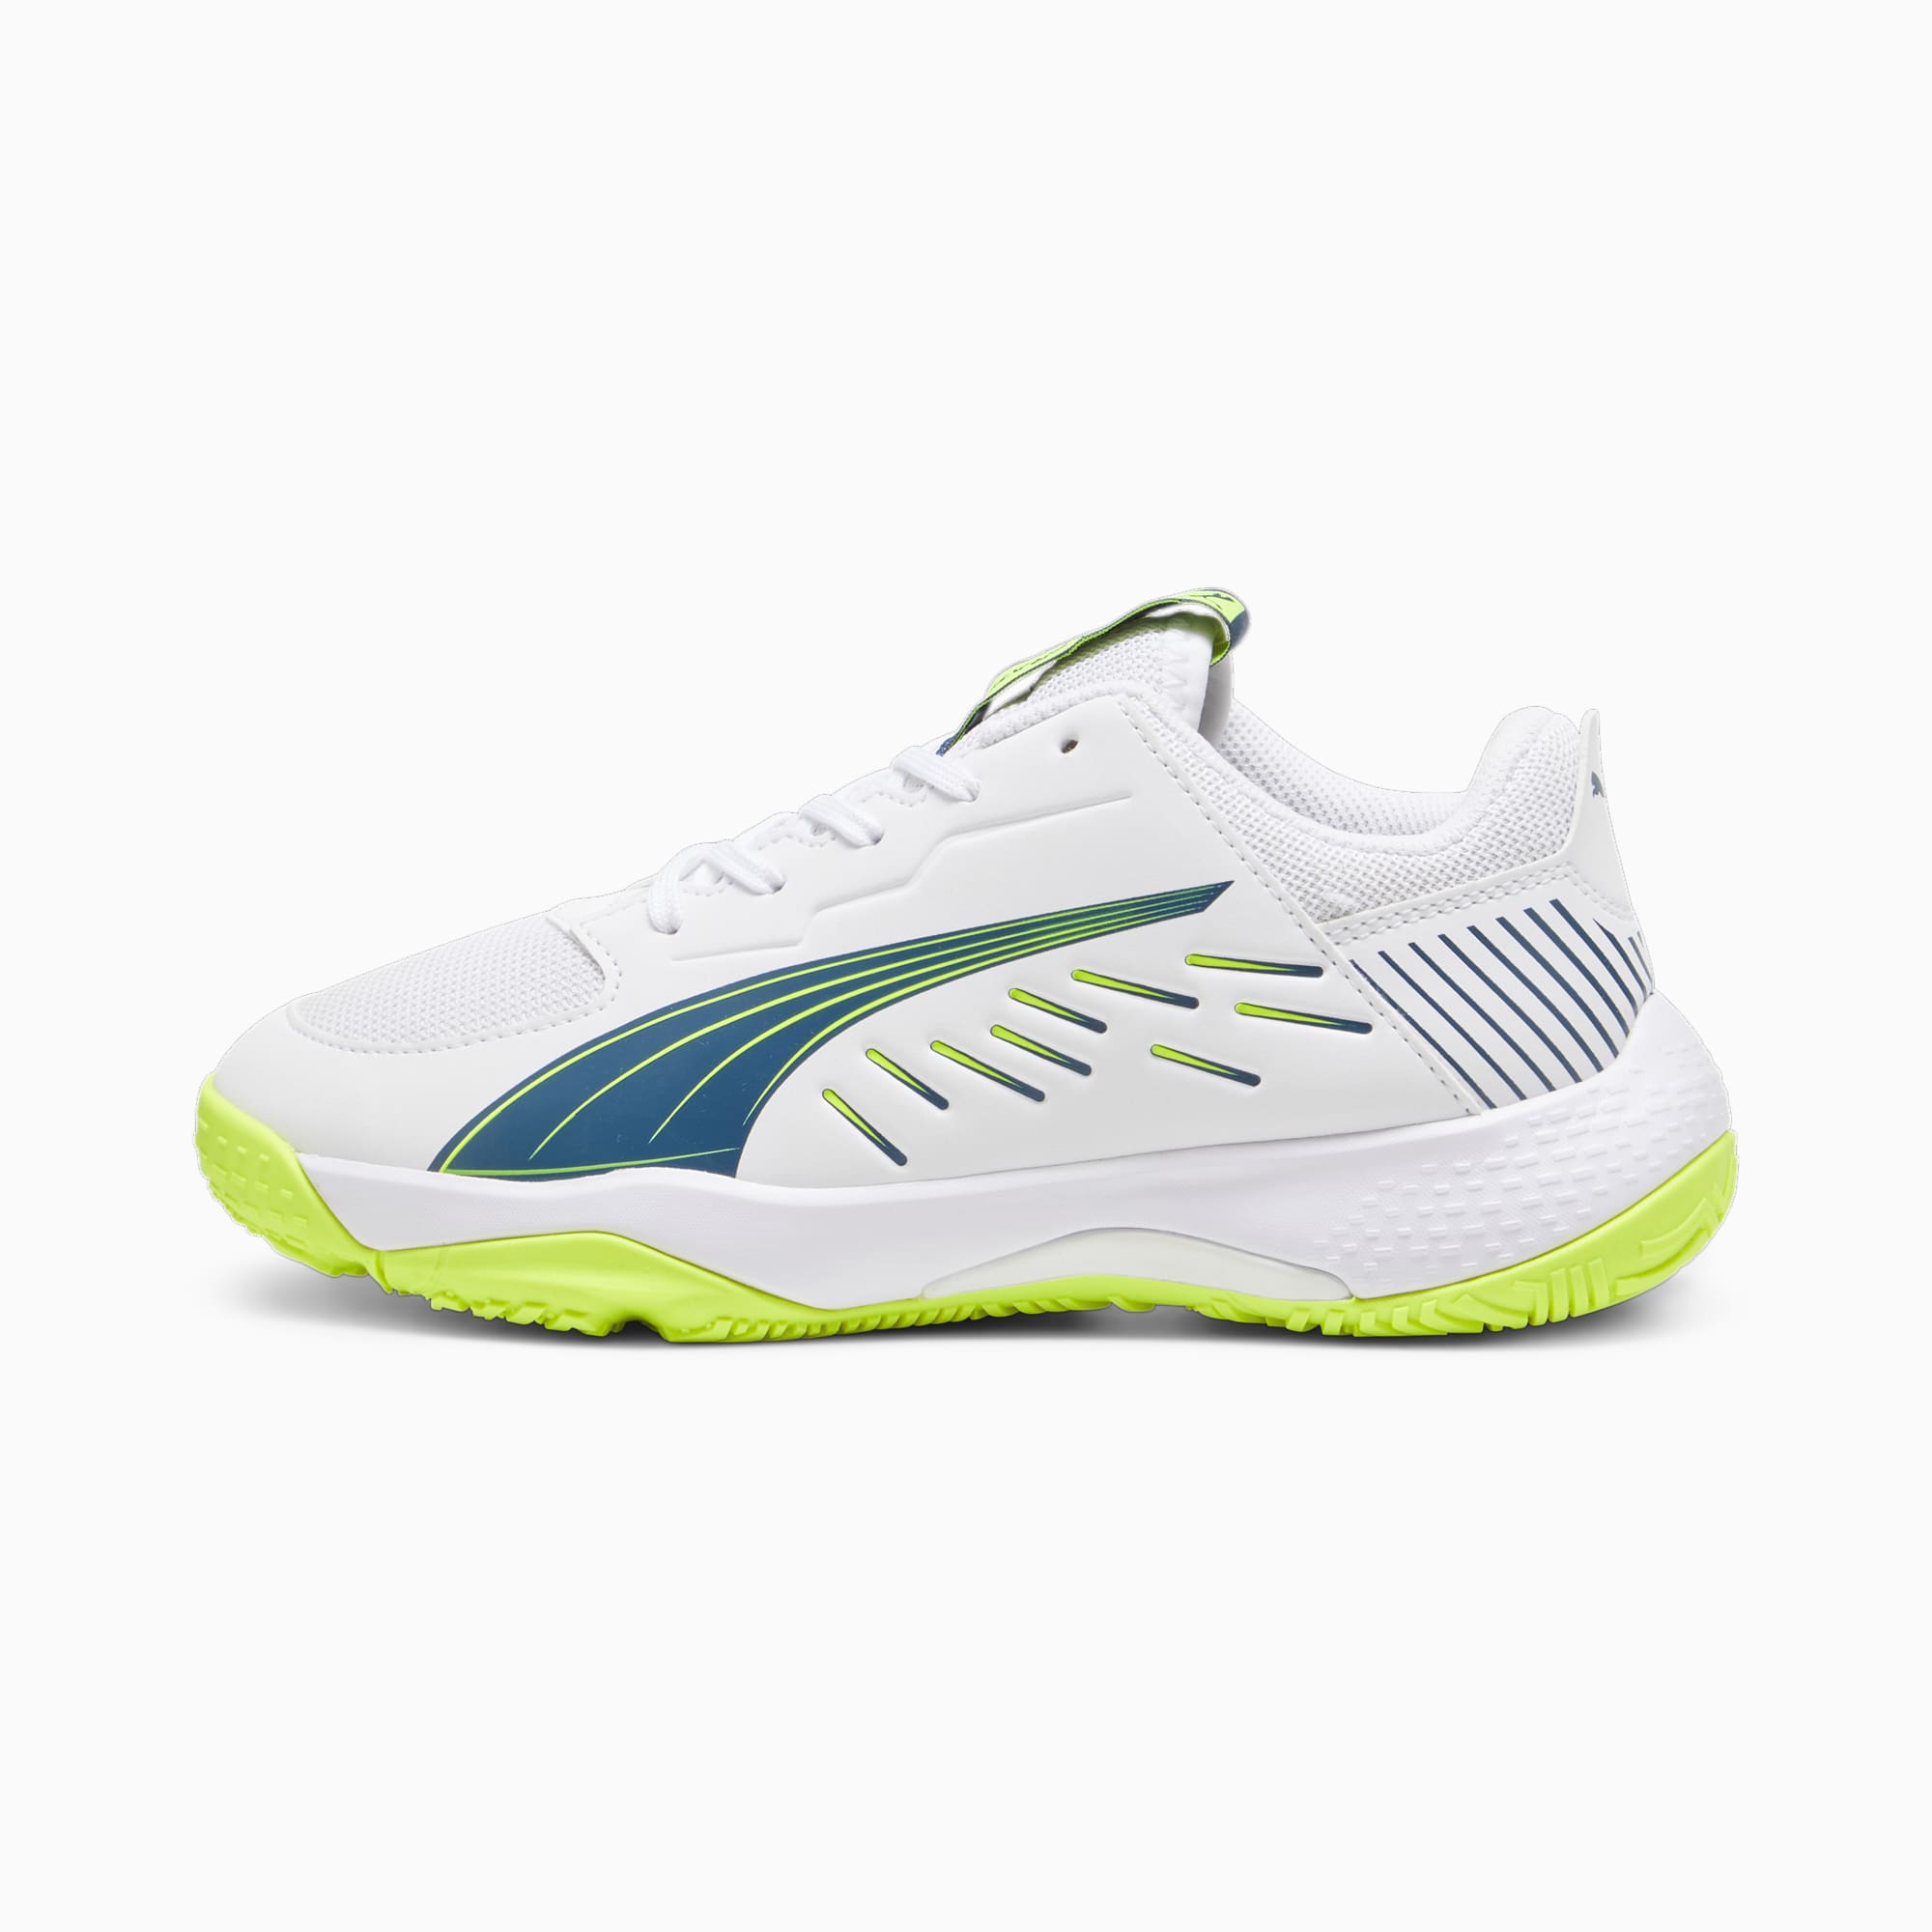 puma chaussures de handball accelerate enfant, blanc/bleu/vert, taille 34.5, chaussures